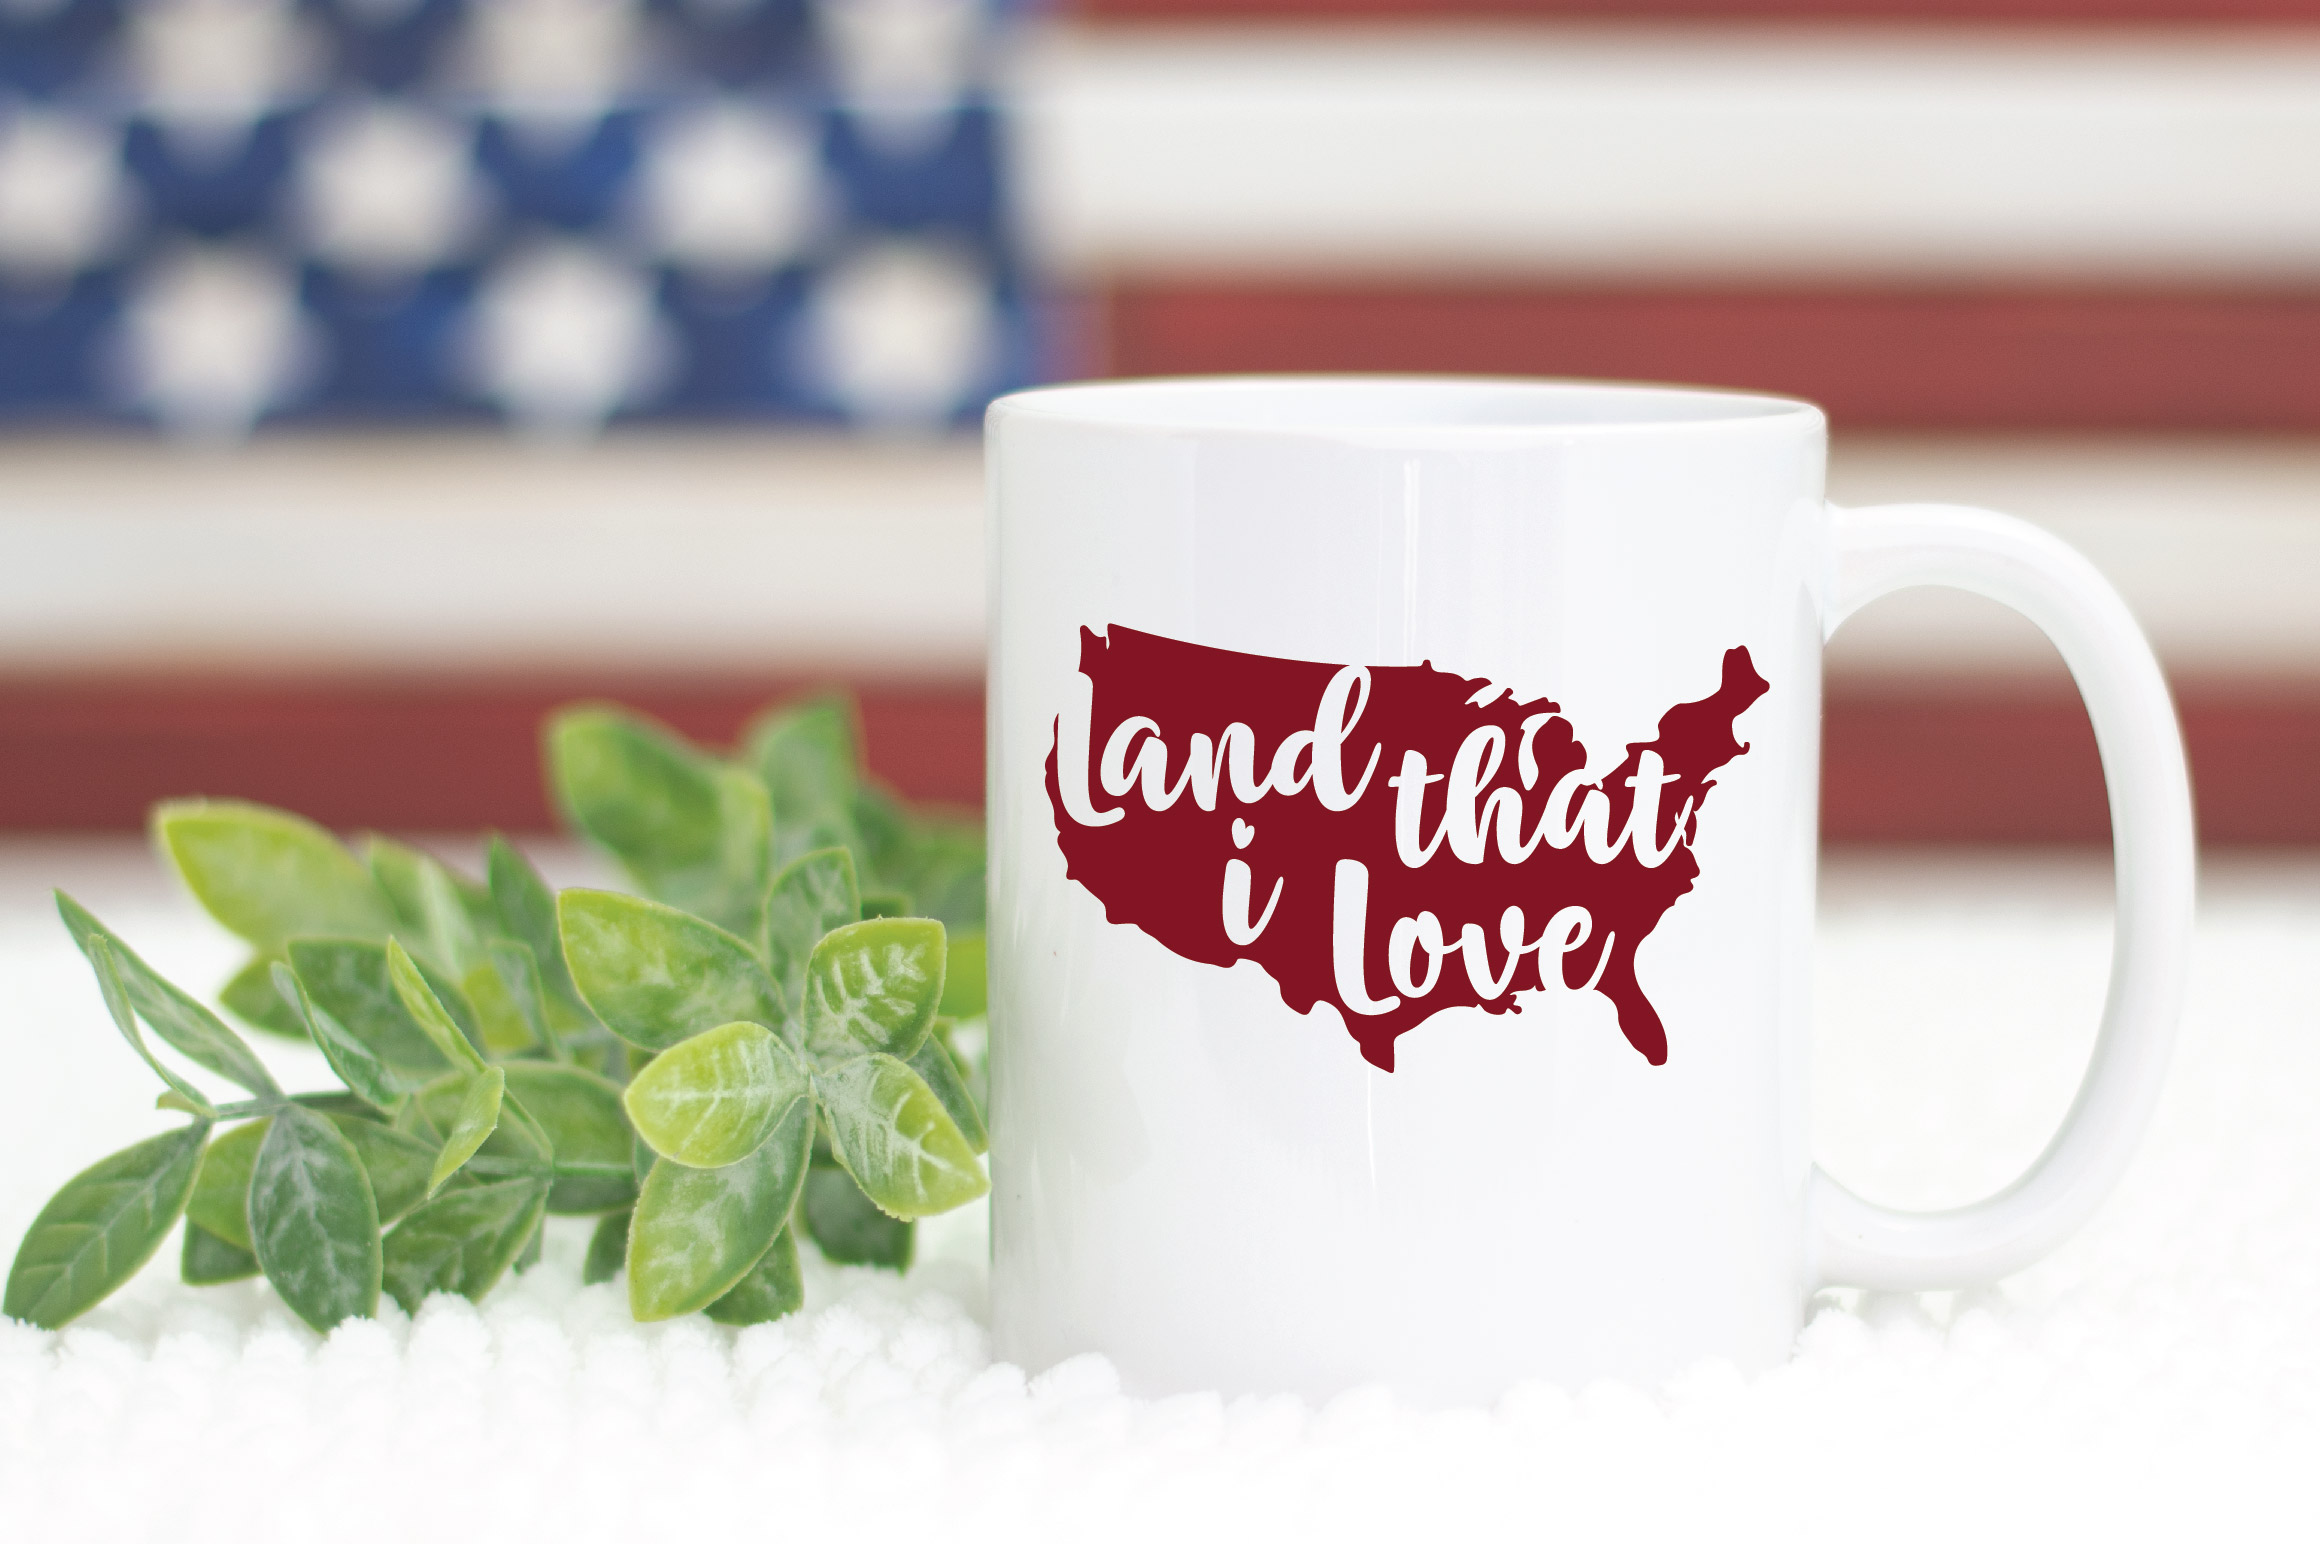 Download Land that I Love SVG Cut File - Patriotic SVG DXF EPS PNG